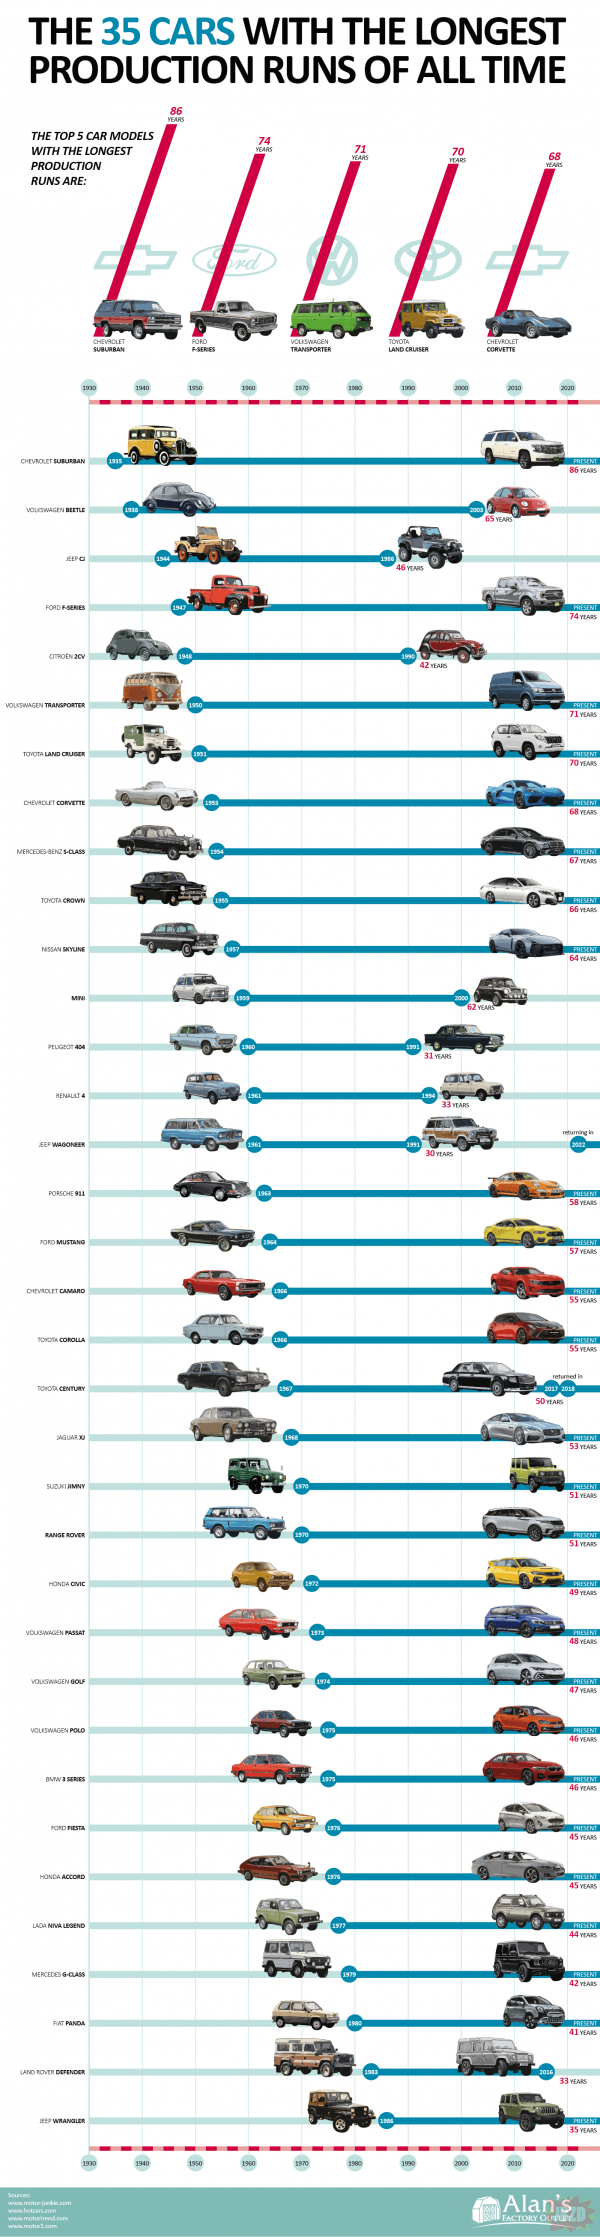 Najdłużej produkowane samochody